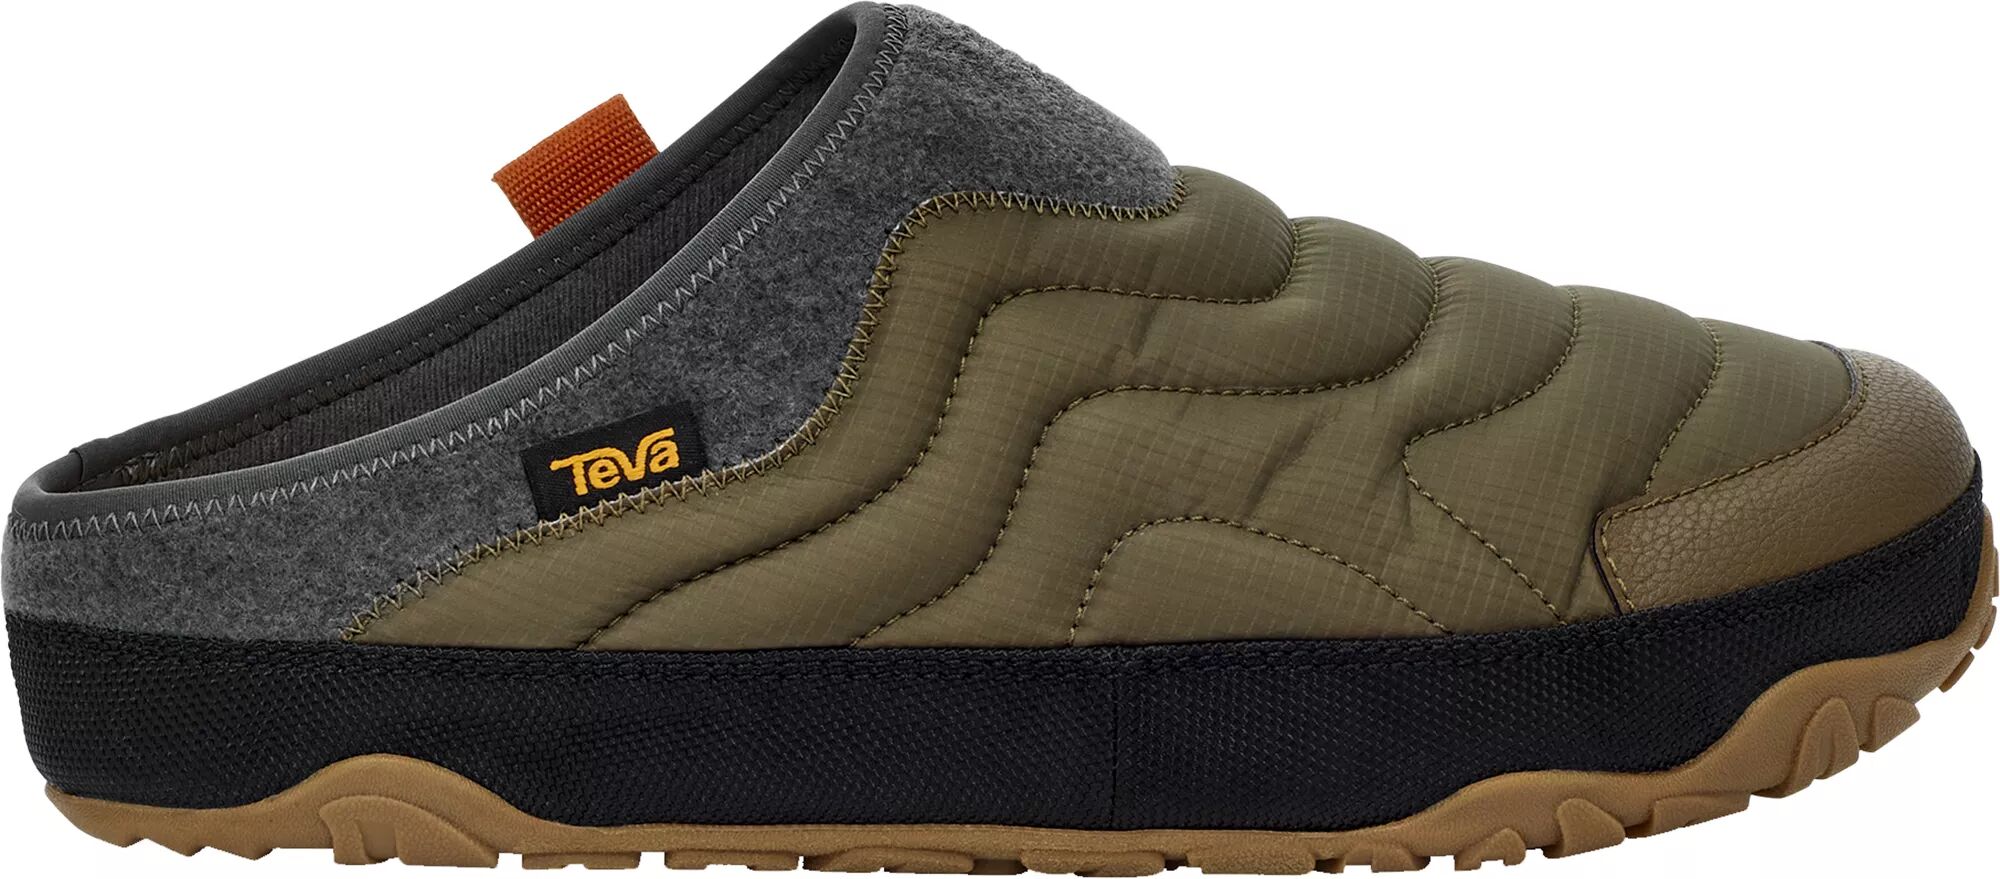 Teva Men's ReEMBER Terrain Slip-On Shoes, Size 8, Green